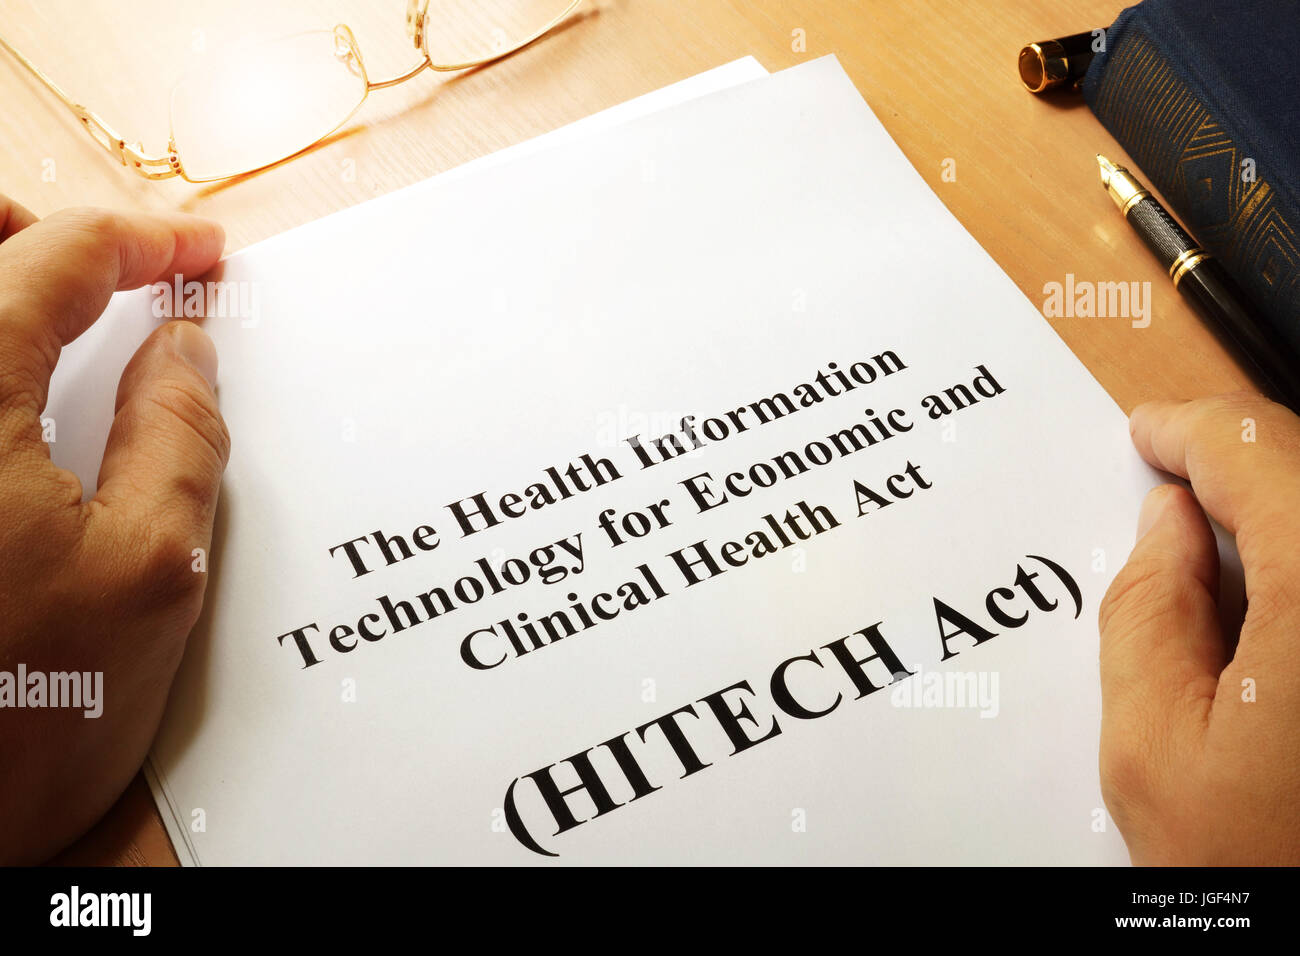 Gesundheit-Informationstechnologie für wirtschaftlichen und klinischen Gesundheitsgesetz (HITECH Act) Stockfoto